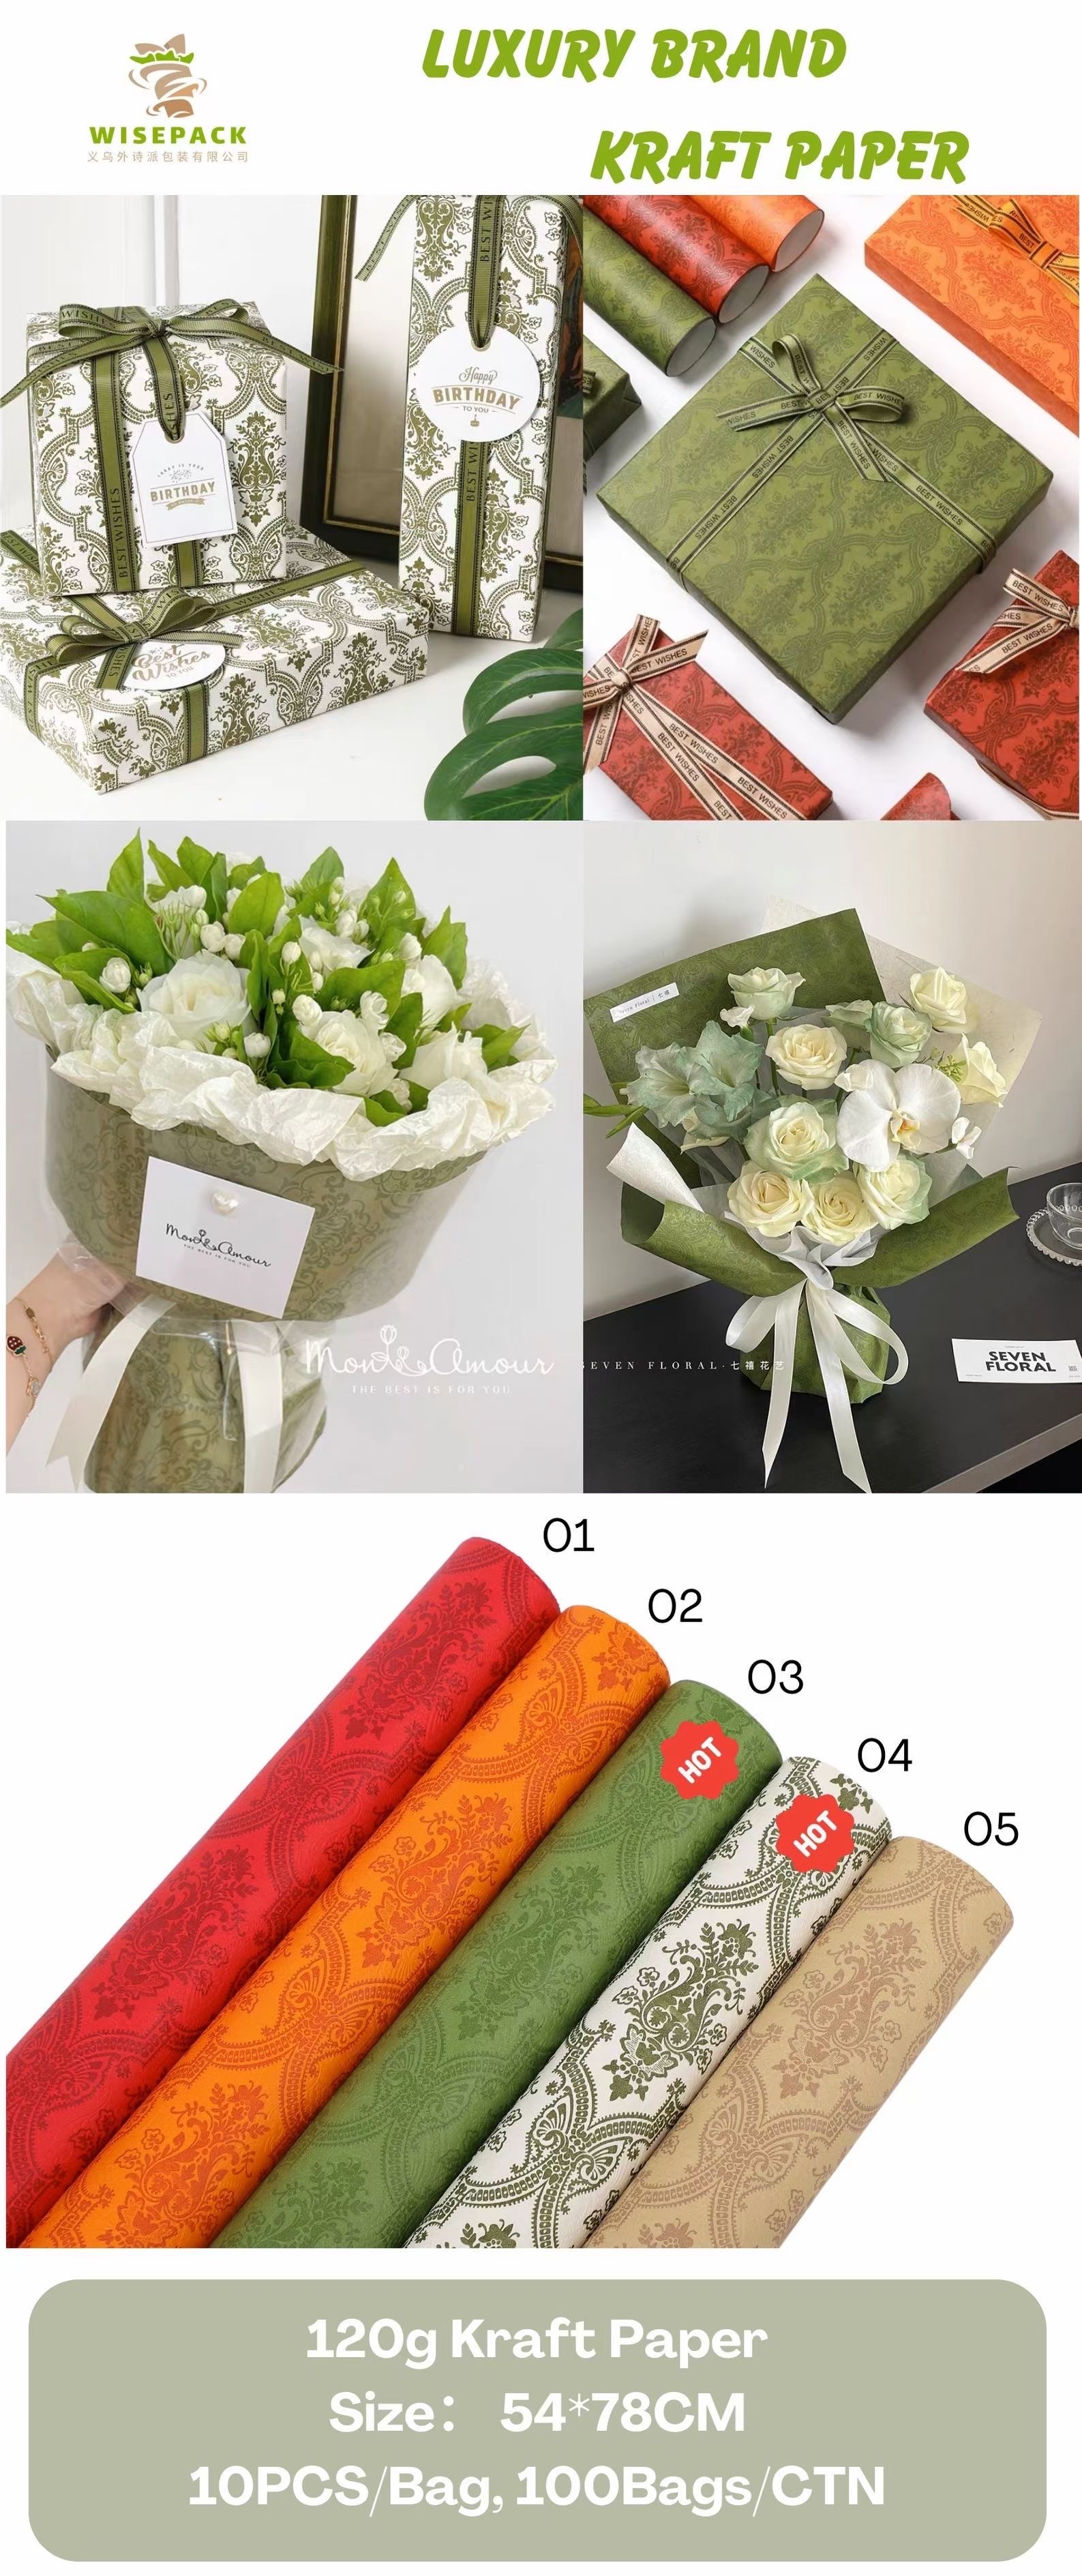 限时抢购！网红鲜花礼品包装纸，超值价格，购买即送惊喜赠品，错过绝对会后悔！